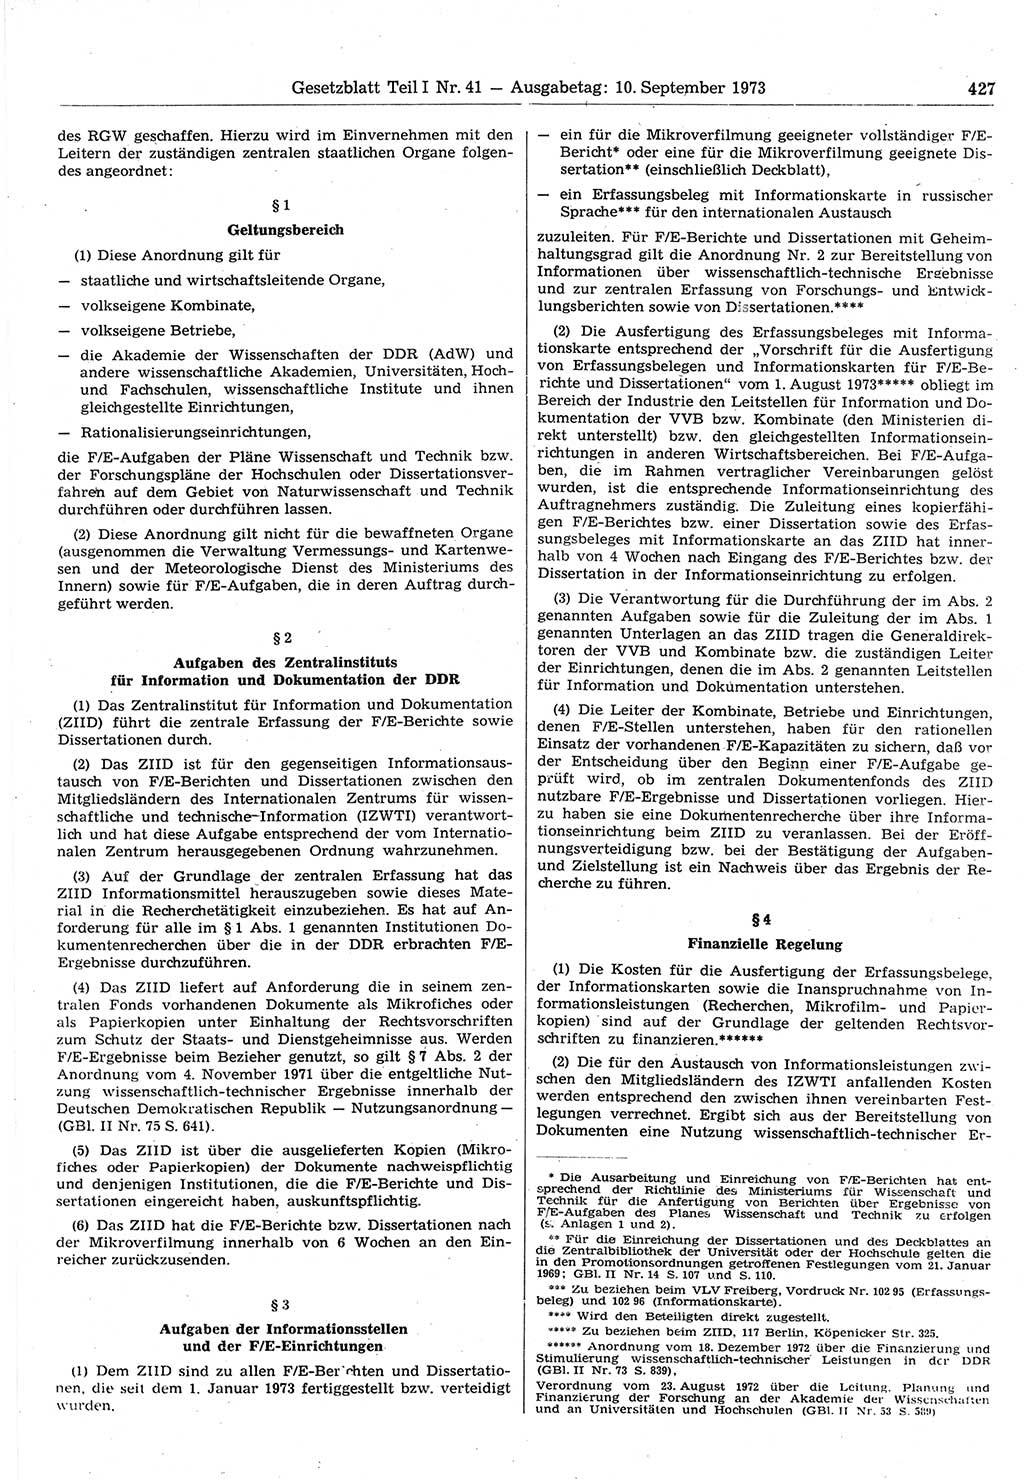 Gesetzblatt (GBl.) der Deutschen Demokratischen Republik (DDR) Teil Ⅰ 1973, Seite 427 (GBl. DDR Ⅰ 1973, S. 427)